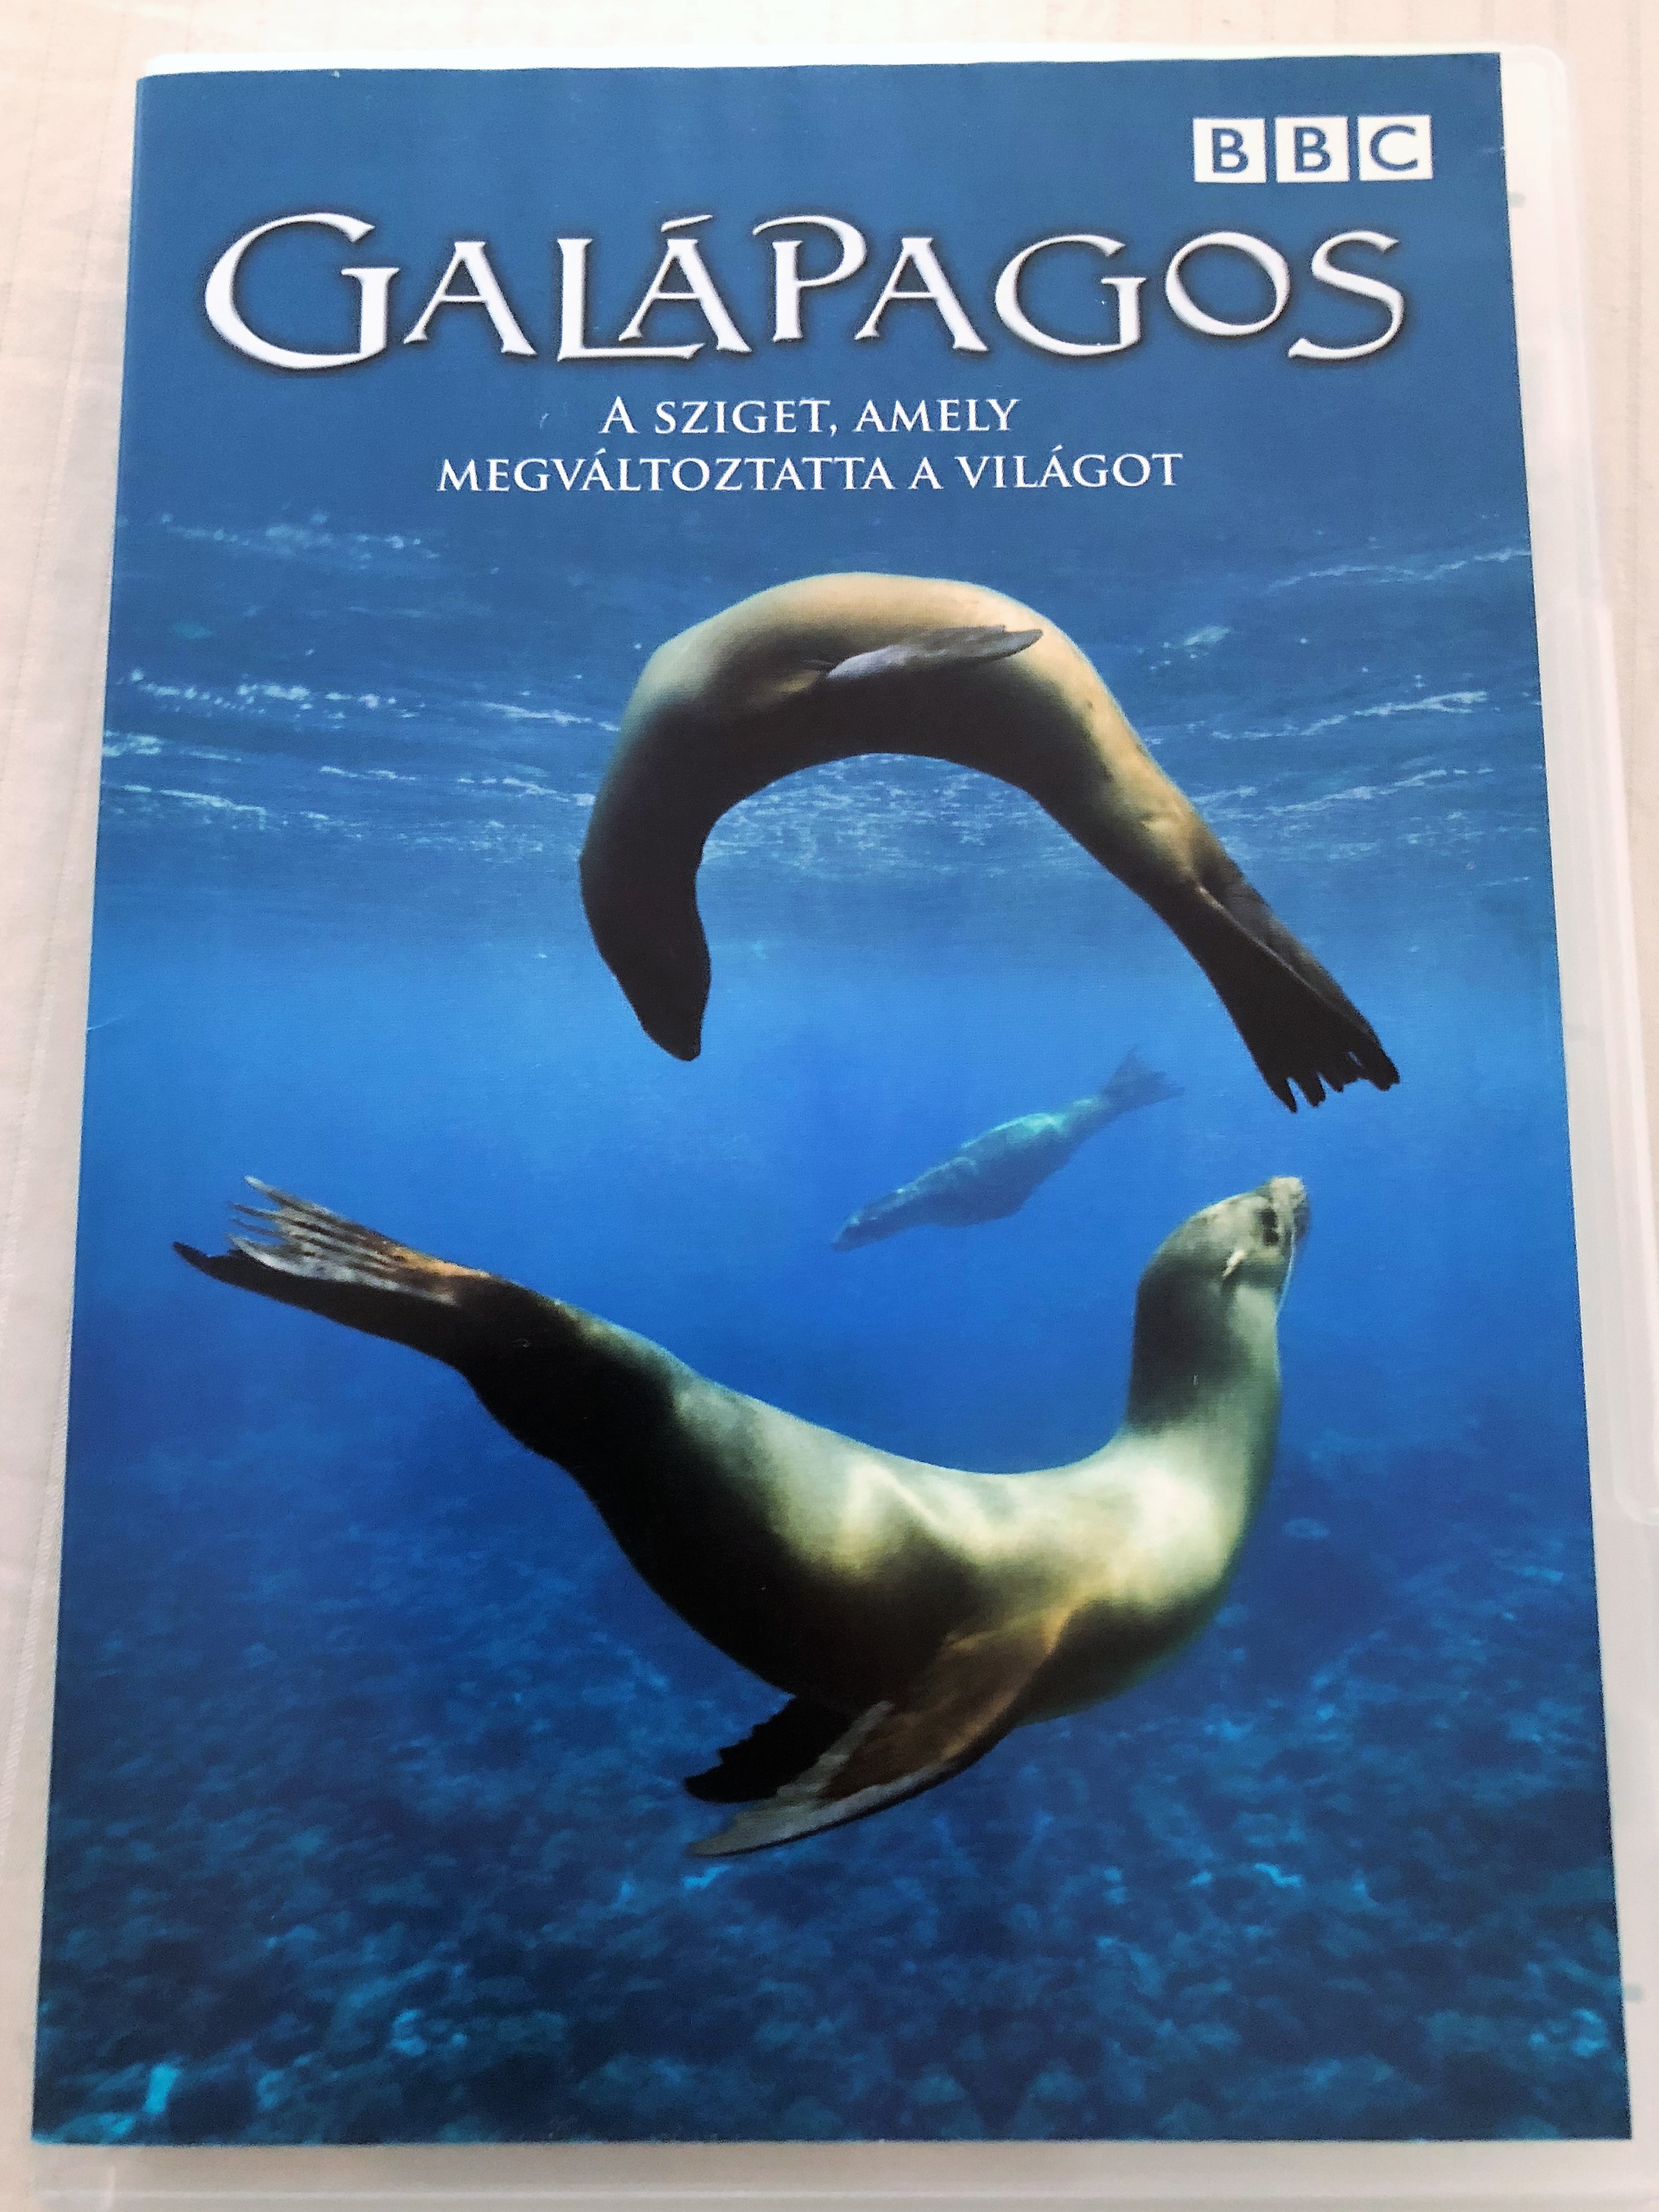 Galápagos - A sziget amely megváltoztatta a világot DVD 2006 The Islands  That Changed The World / BBC documentary / 1. A tűz születése, 2. A világot  megváltoztató szigetek, 3. A változás erői - bibleinmylanguage